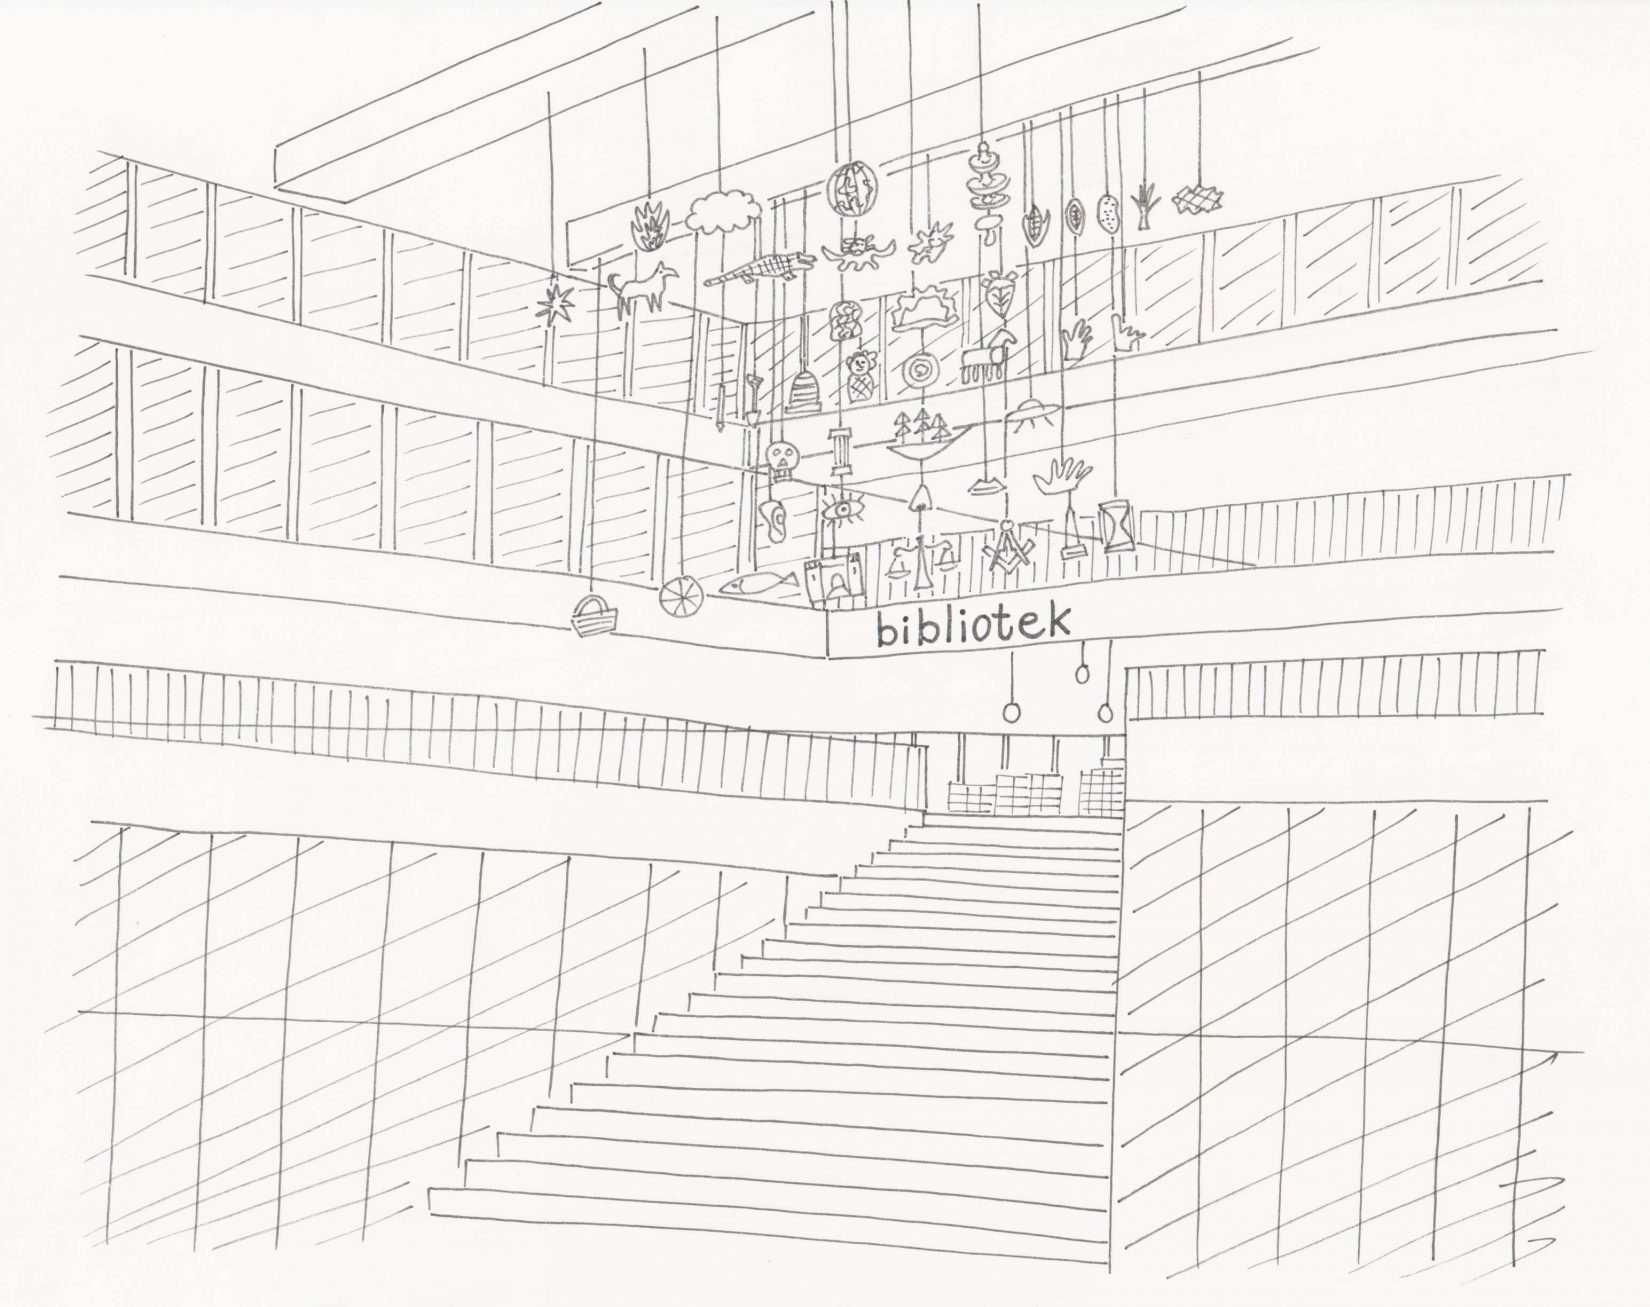 Svartvit illustration av bred trappa i en offentlig byggnad. I taket hänger en mobil på olika objekt.